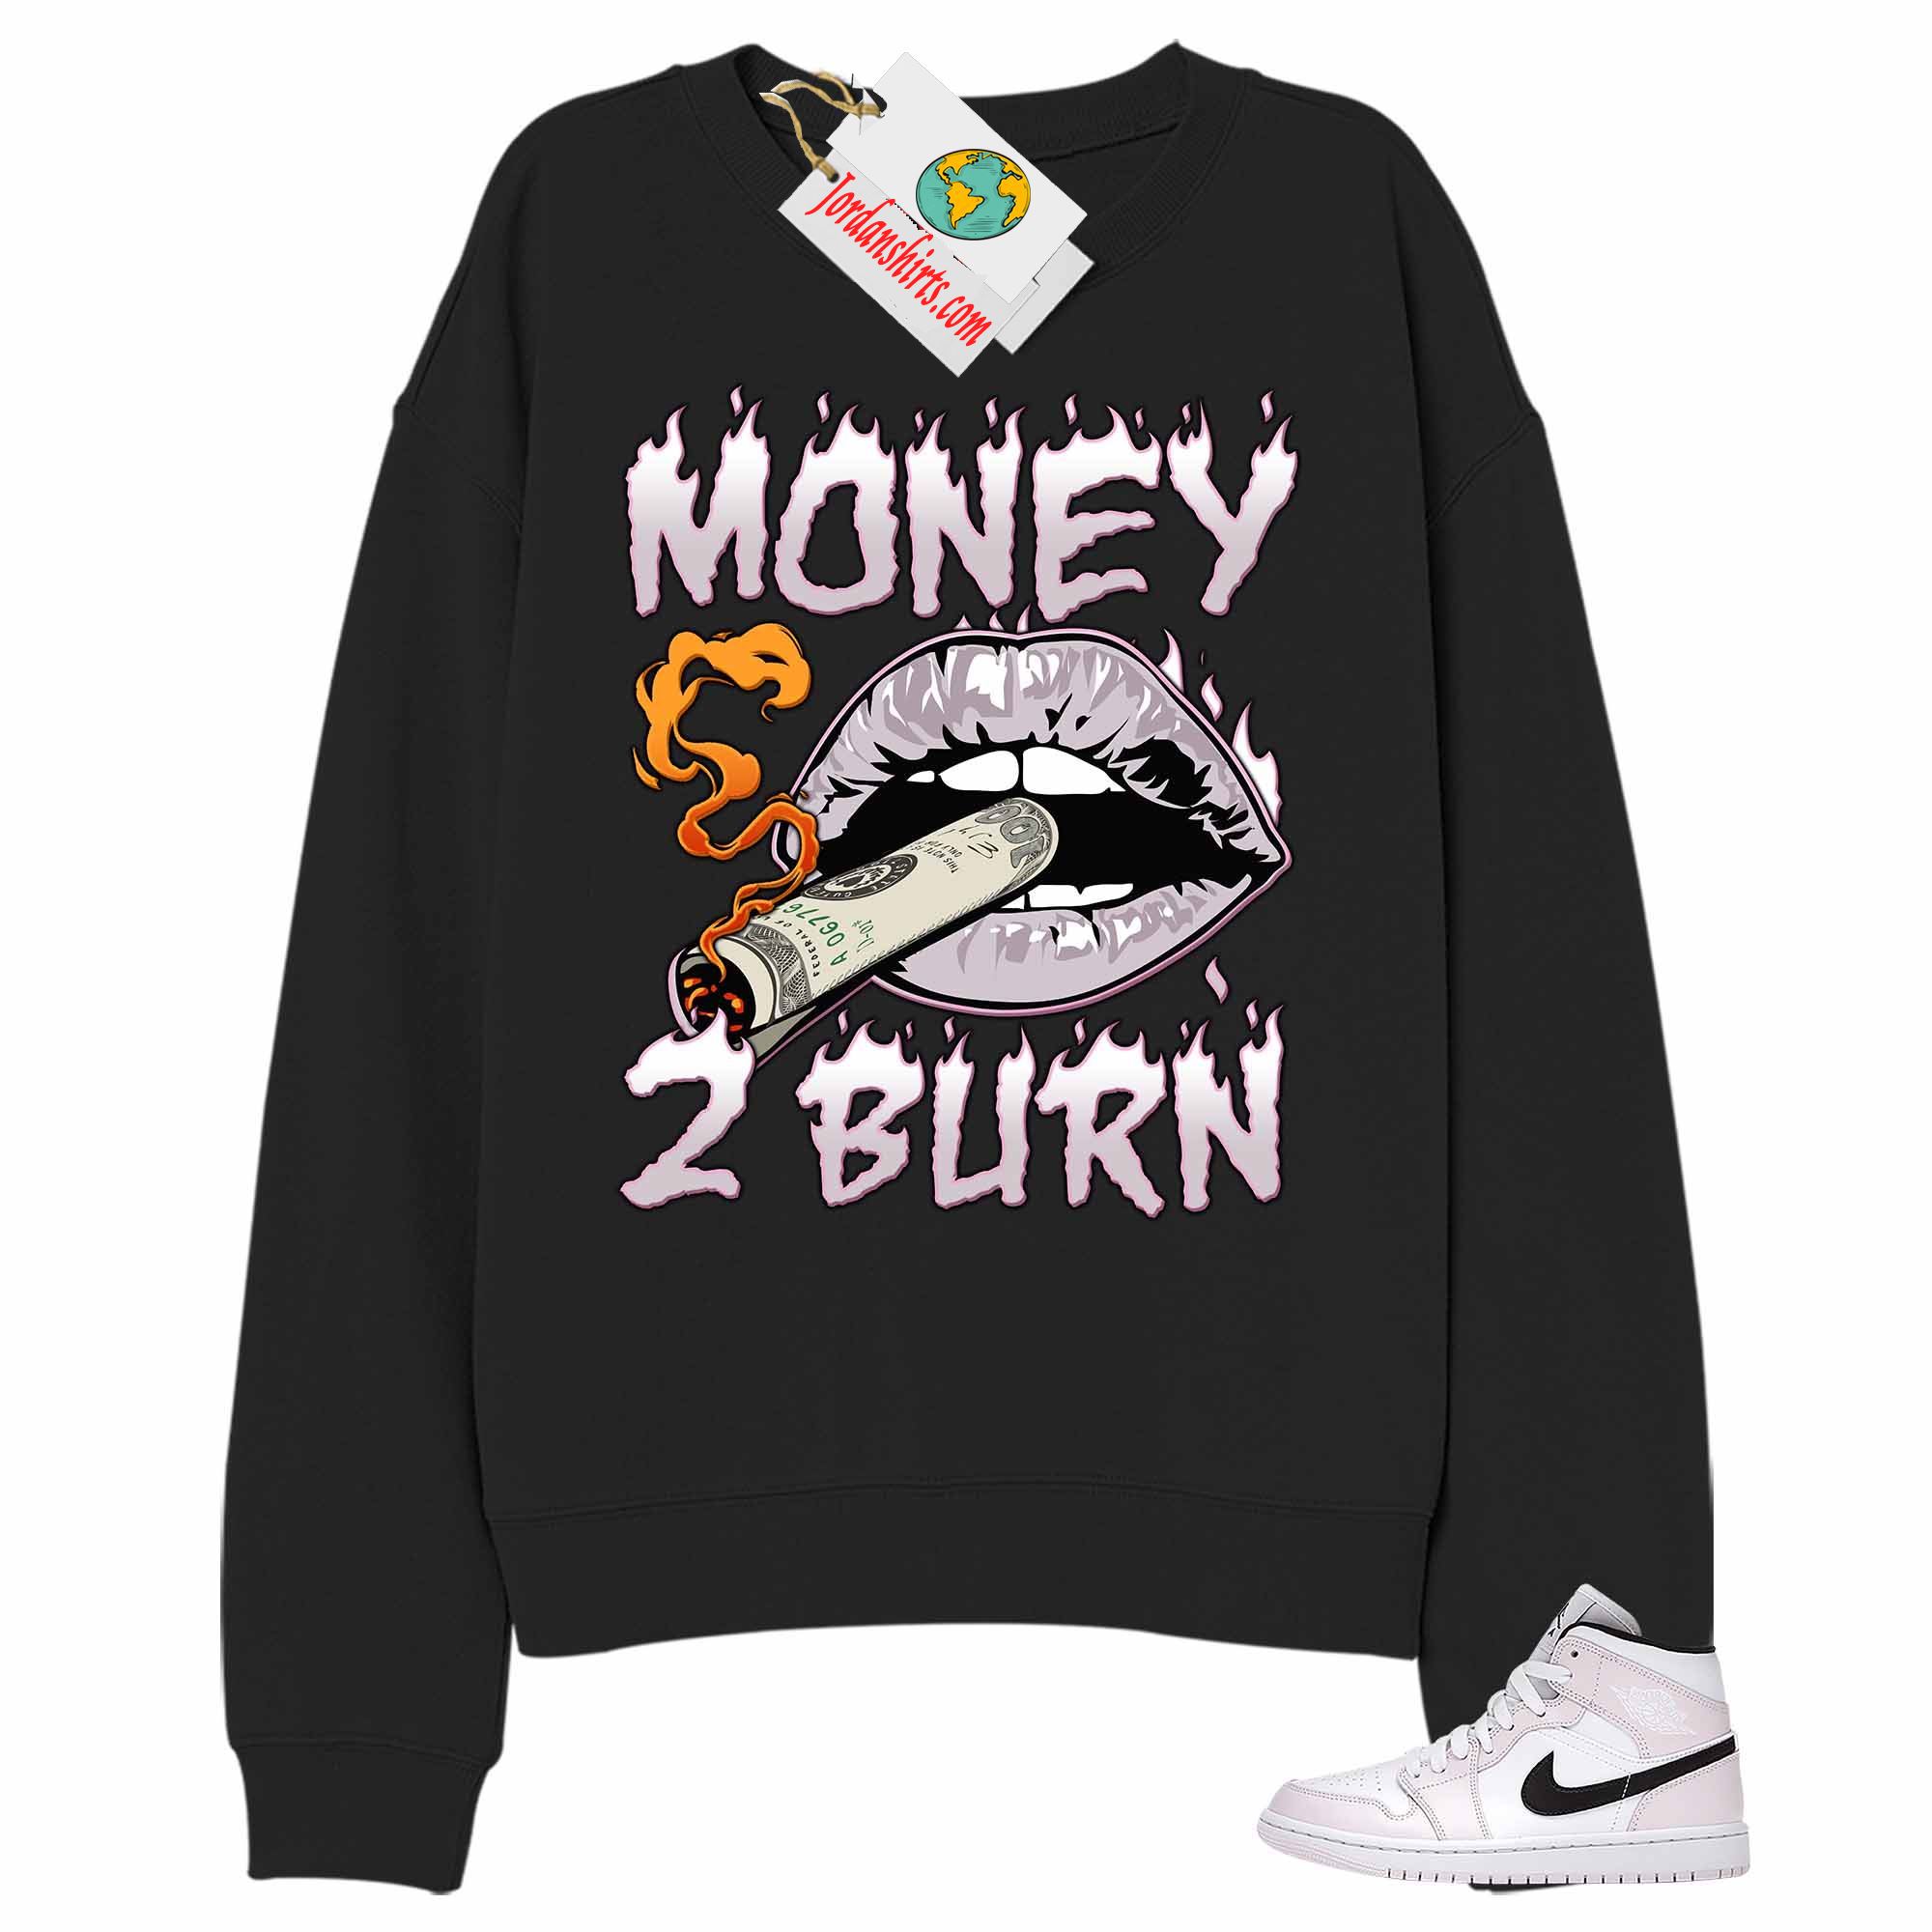 Jordan 1 Sweatshirt, Money To Burn Black Sweatshirt Air Jordan 1 Barely Rose 1s Plus Size Up To 5xl